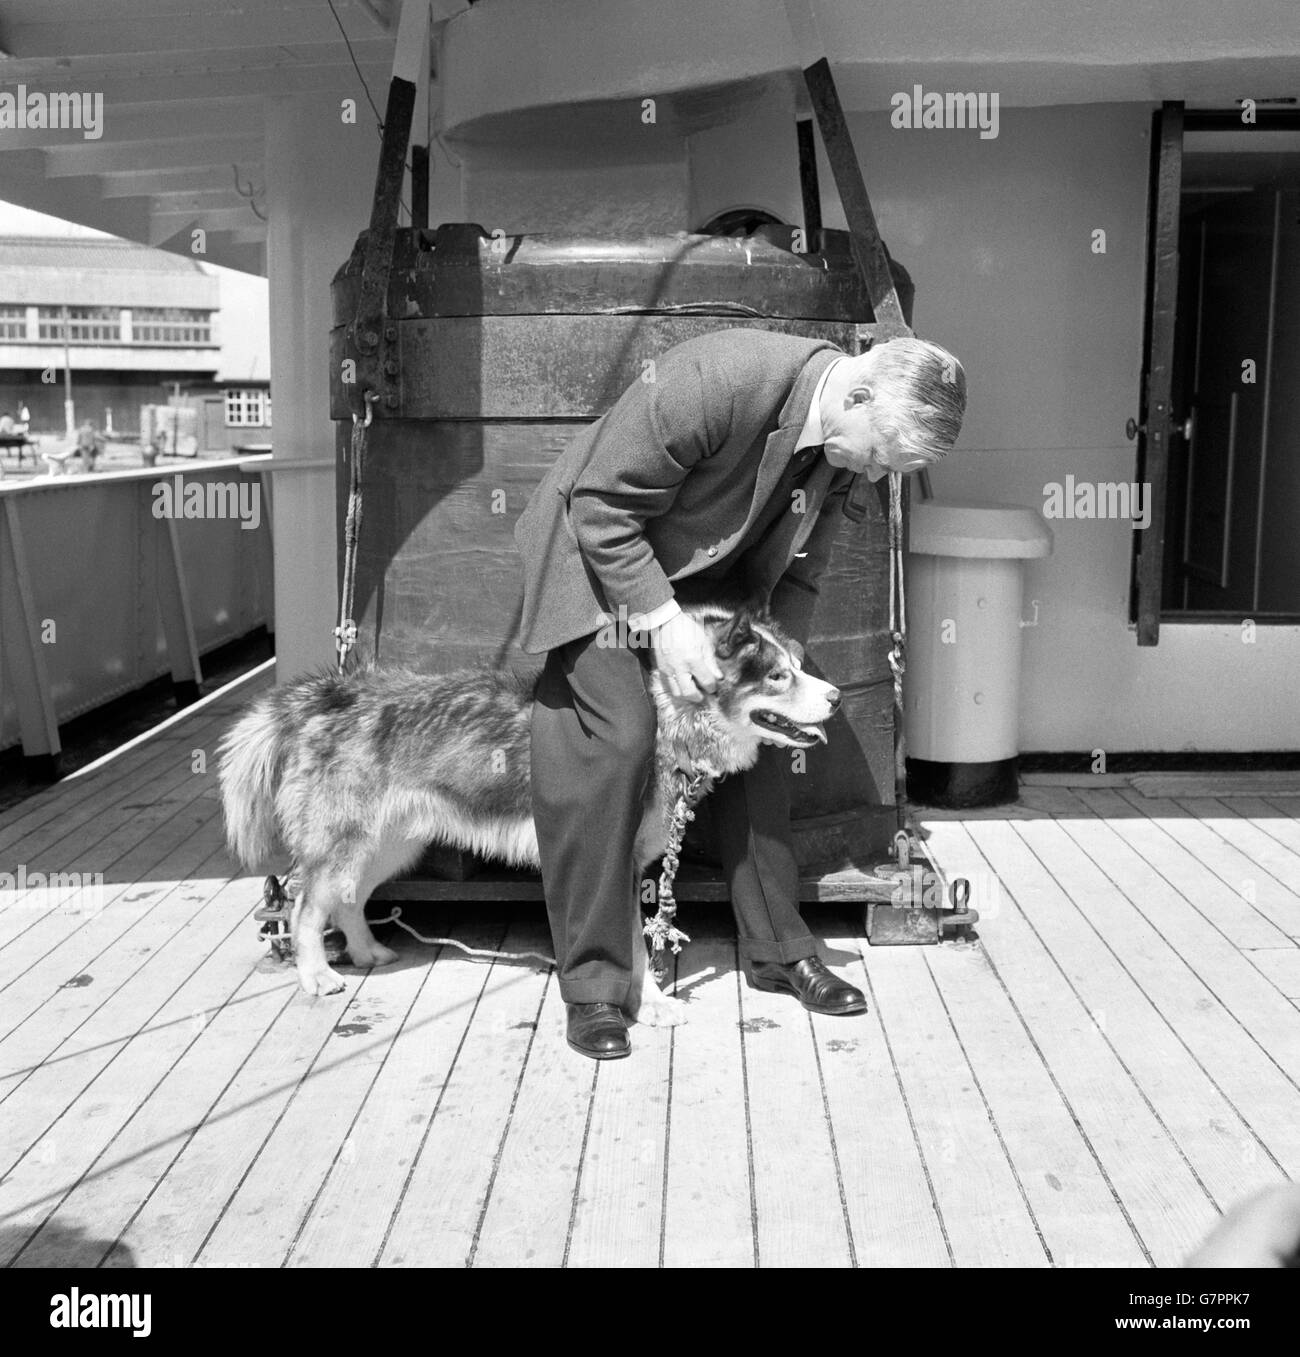 Sir Vivian Fuchs, Direktor des British Antarctic Survey, wird an Bord des RRS John Biscoe bei seiner Ankunft in Southampton gezeigt und freundet sich mit Haligrant, bekannt als Malig, einem Husky, an. Sir Vivian begrüßte das Schiff mit 19 Mitgliedern der Survey, die bis zu zwei Jahre in der Antarktis verbracht haben. Malig, wurde von Herrn Bellars, dem Tierarzt des Schiffes, zurückgebracht, der die Hundepopulation an verschiedenen Basen untersucht hat. Man vermutet, dass Malig an einer Form der Hämophilie leidet. Der Hund wird während in Quarantäne untersucht werden, um die genaue Art der Bedingung zu bestimmen, Stockfoto